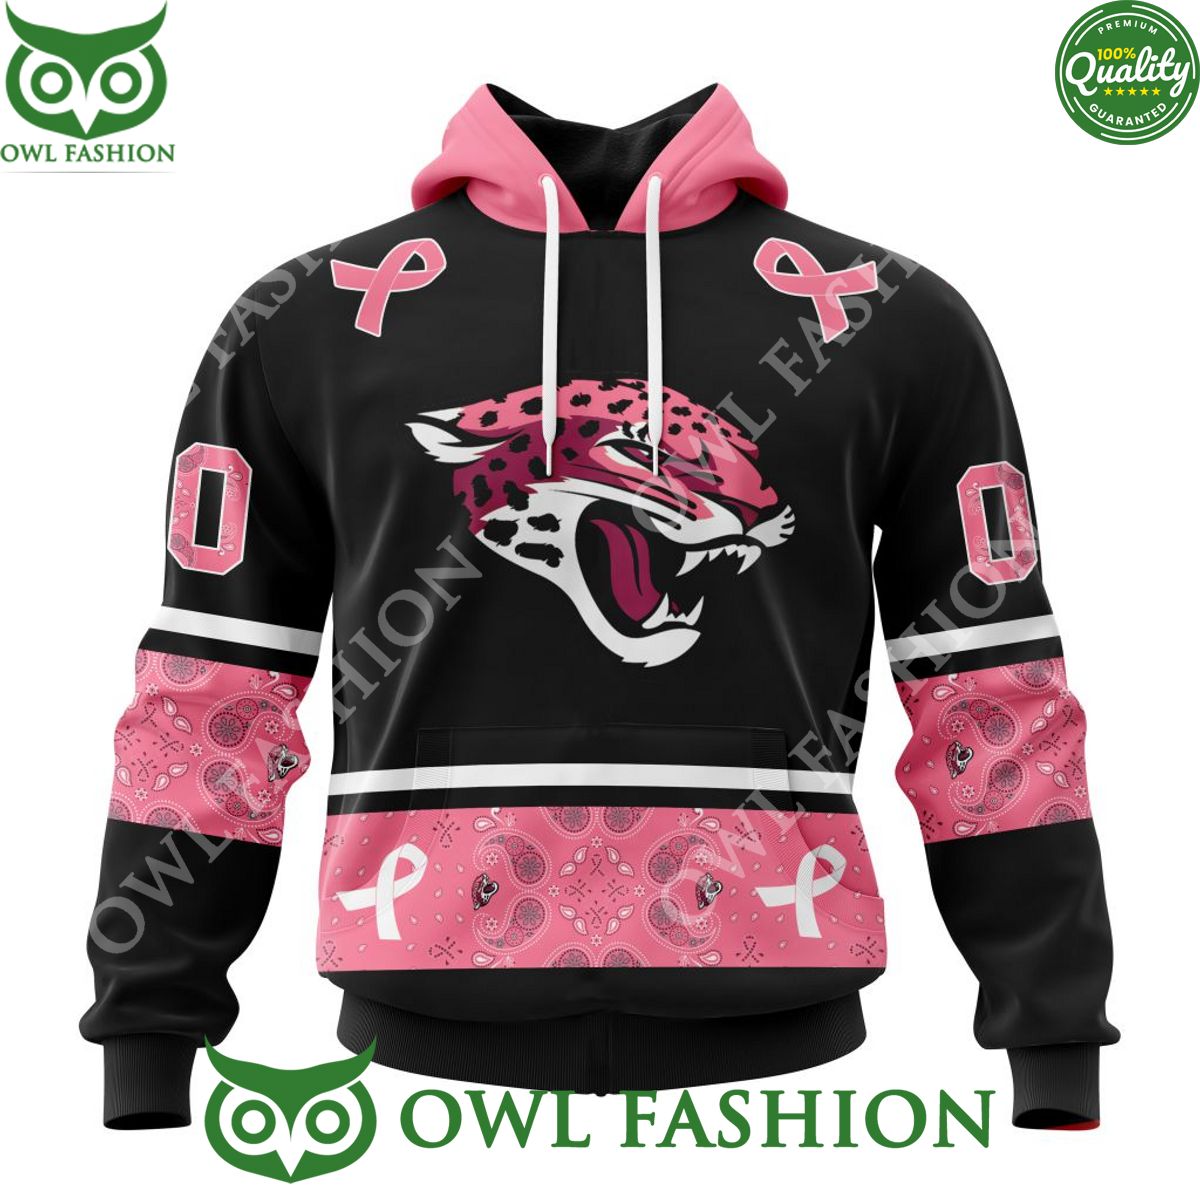 jacksonville jaguars pink breast cancer nfl personalized 3d hoodie shirt 1 cFL7V.jpg